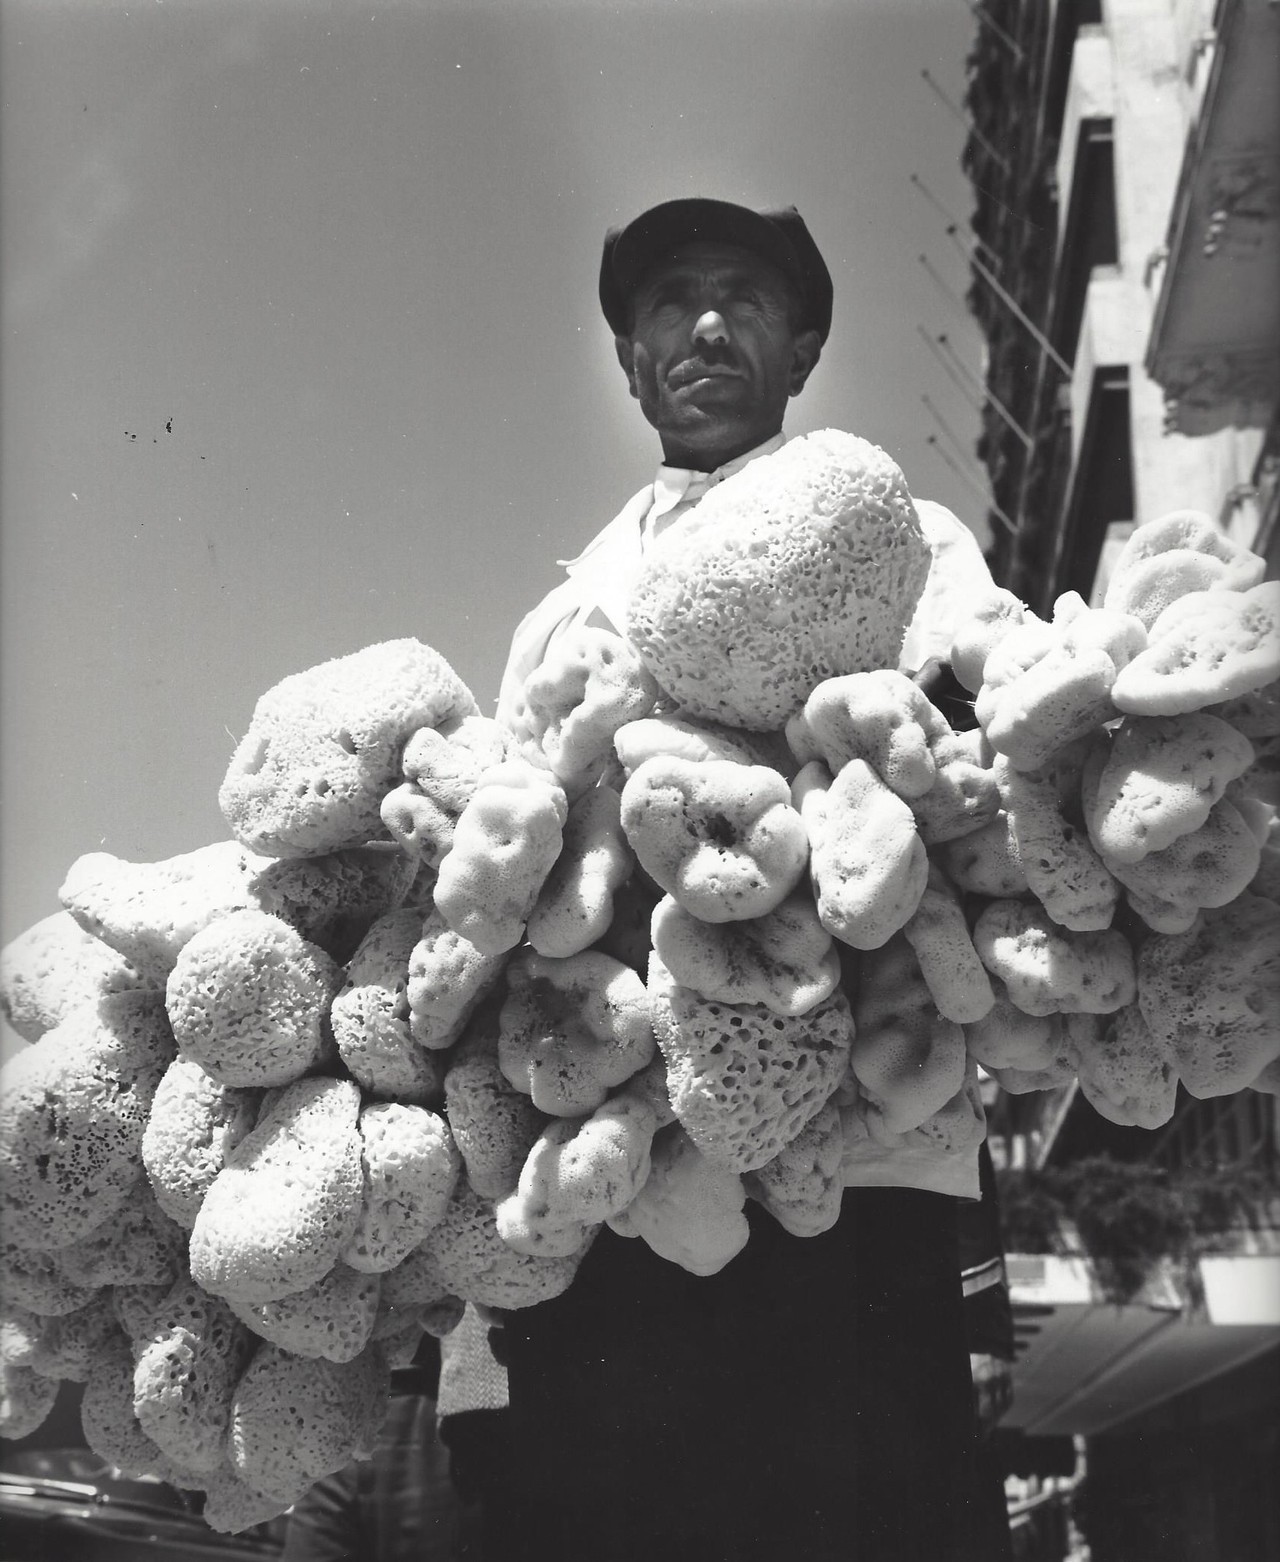 Продавец морских губок, Афины, 1960-е. Фотограф Кис Шерер